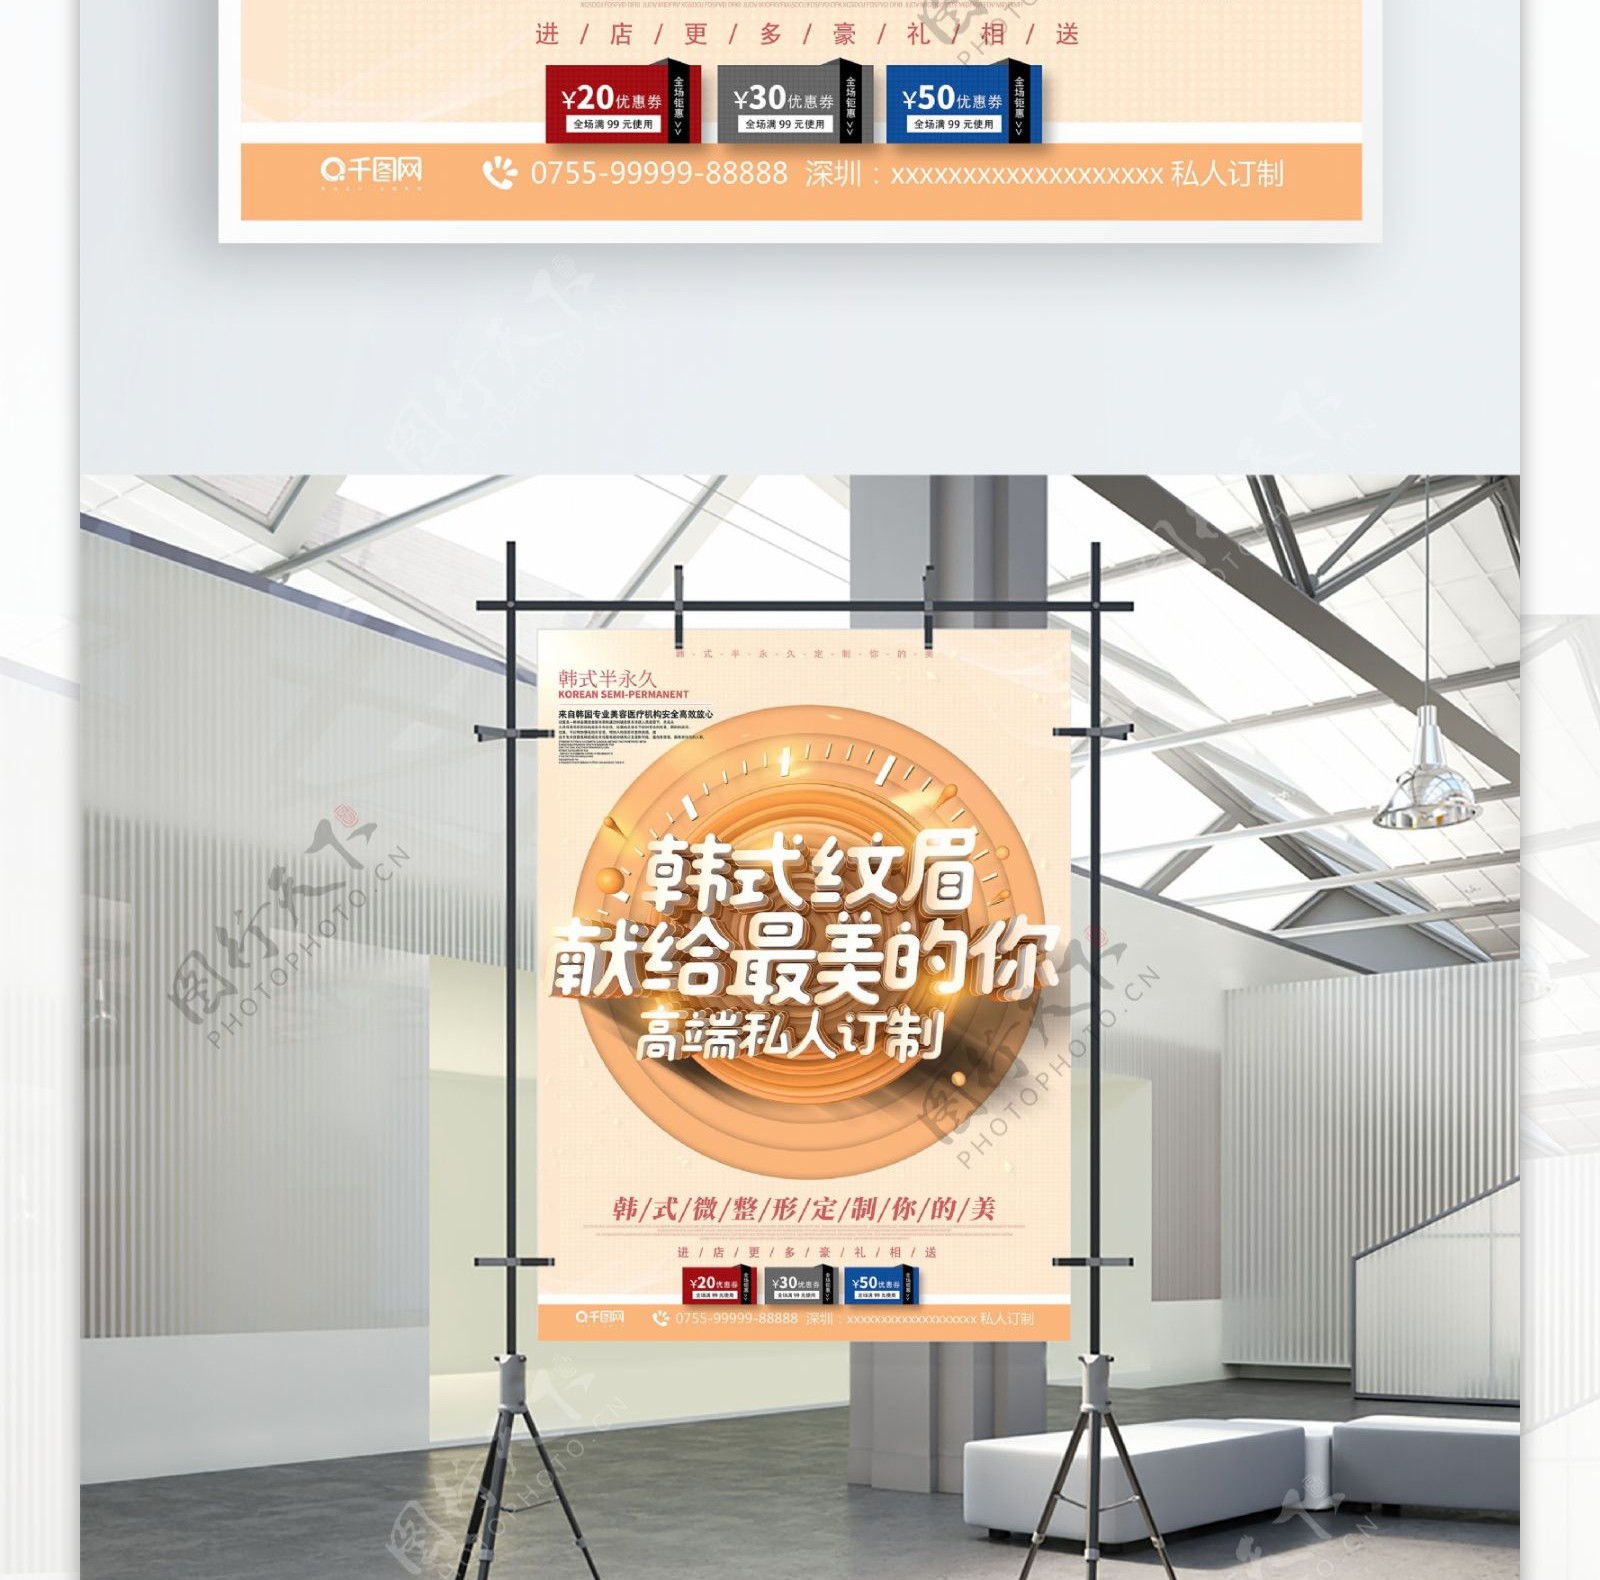 C4D简约风韩式整容塑形微整形促销海报